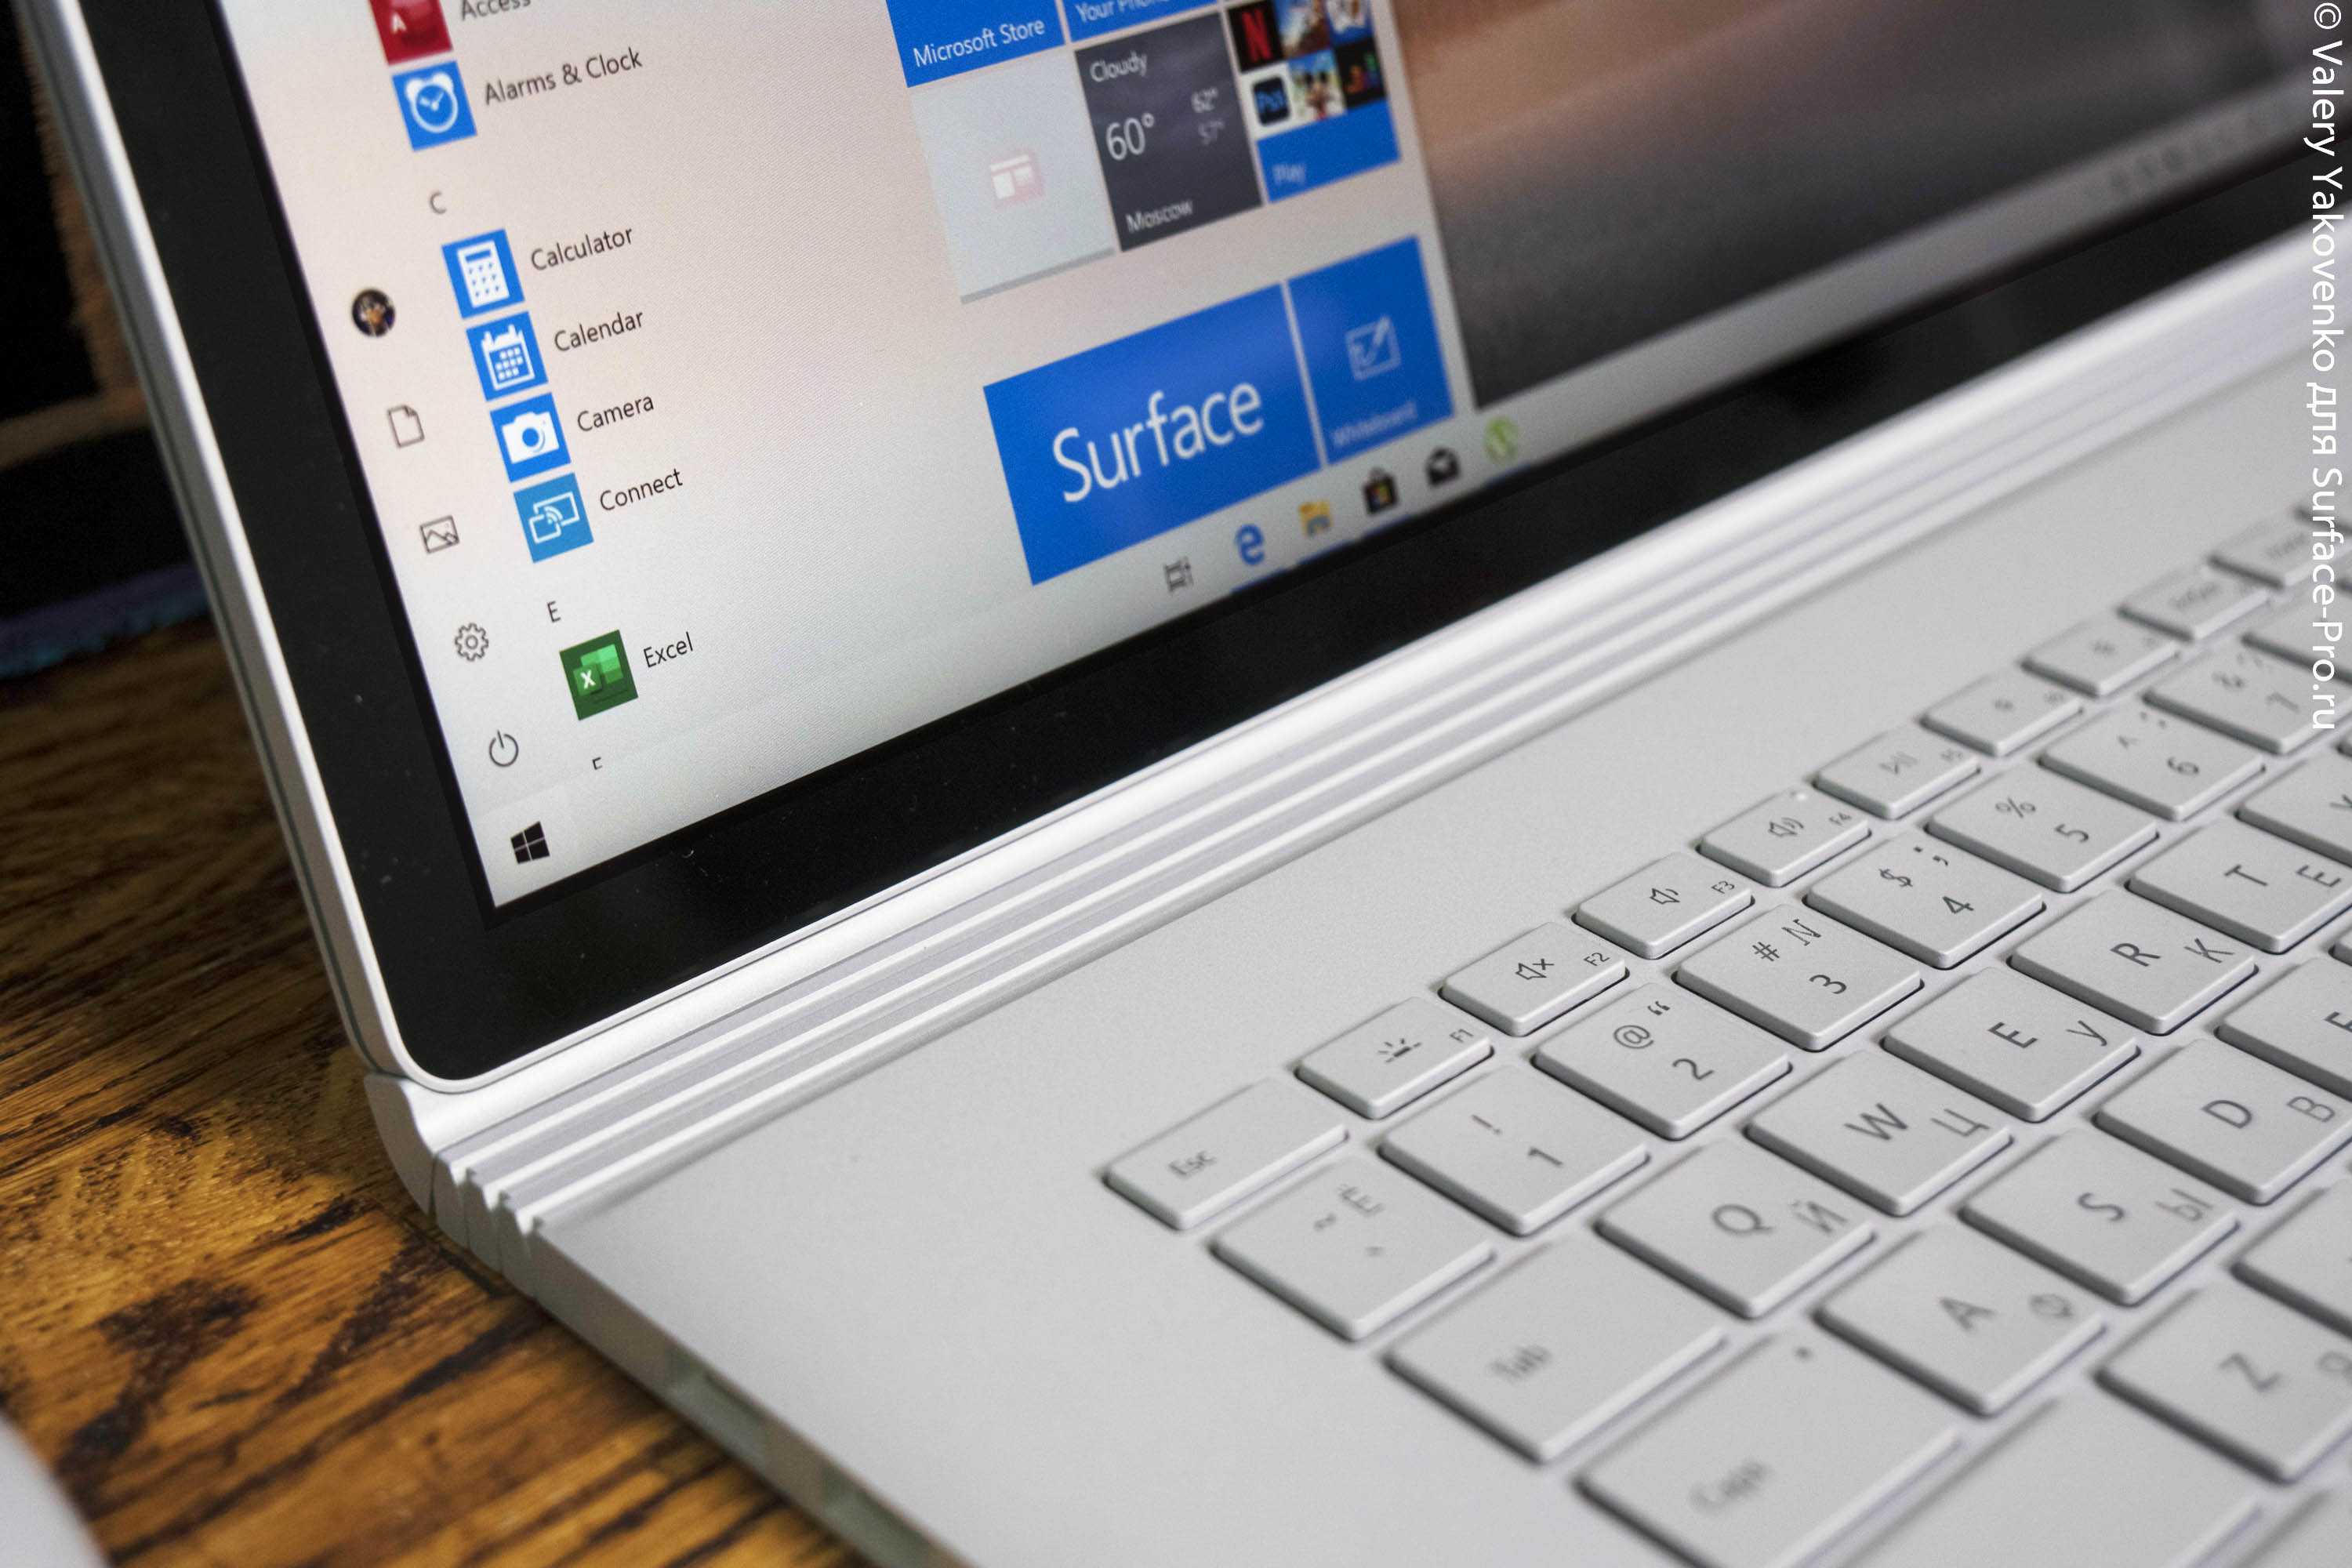 Ноутбук Microsoft Surface Book - подробные характеристики обзоры видео фото Цены в интернет-магазинах где можно купить ноутбук Microsoft Surface Book